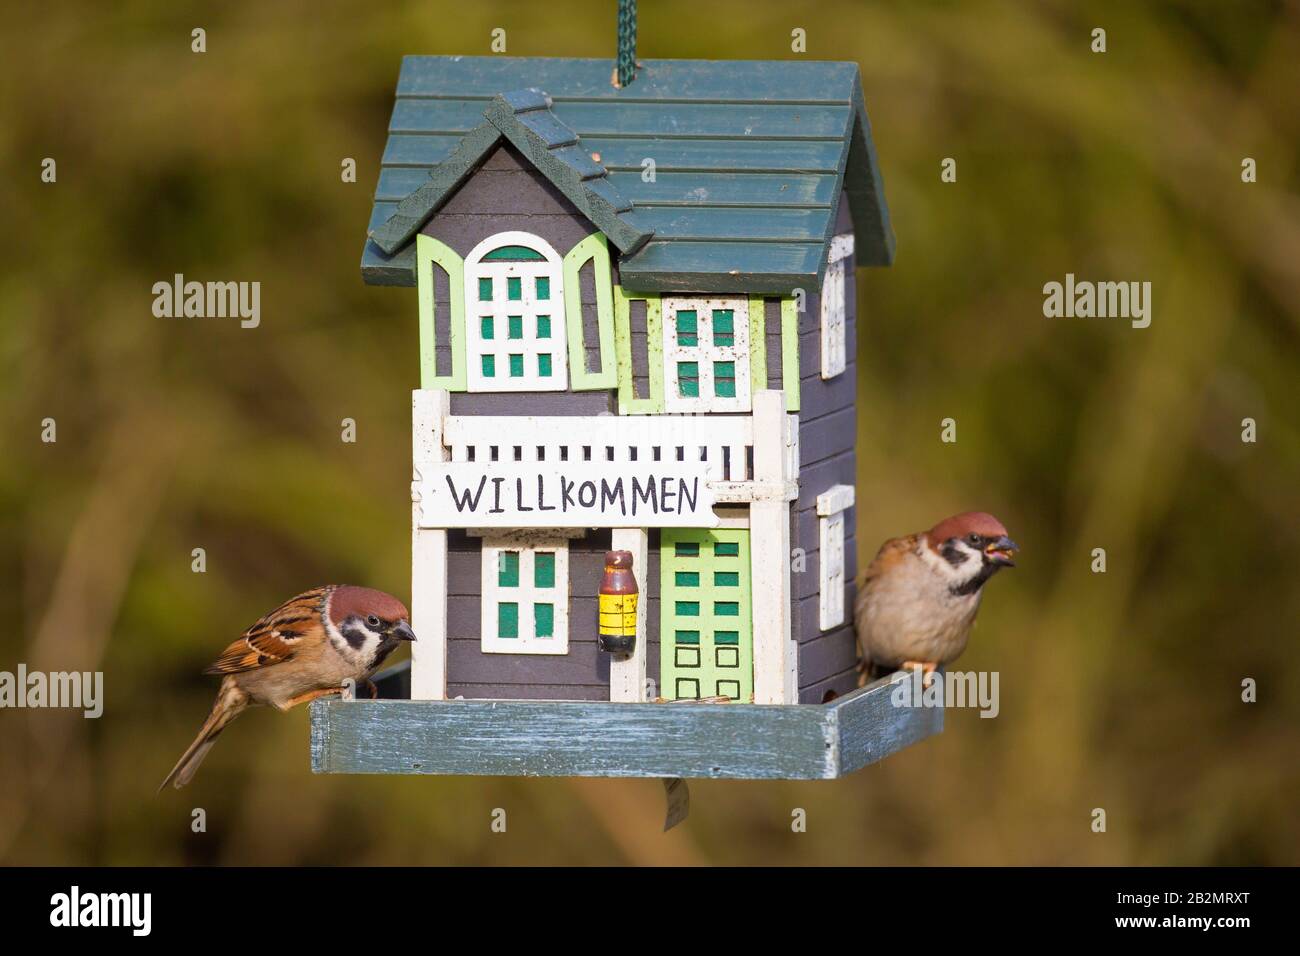 Deux sparrows d'arbres eurasiens (Passer montanus) mangeant des graines du jardin décoré d'oiseau / d'engraissement d'oiseaux Banque D'Images